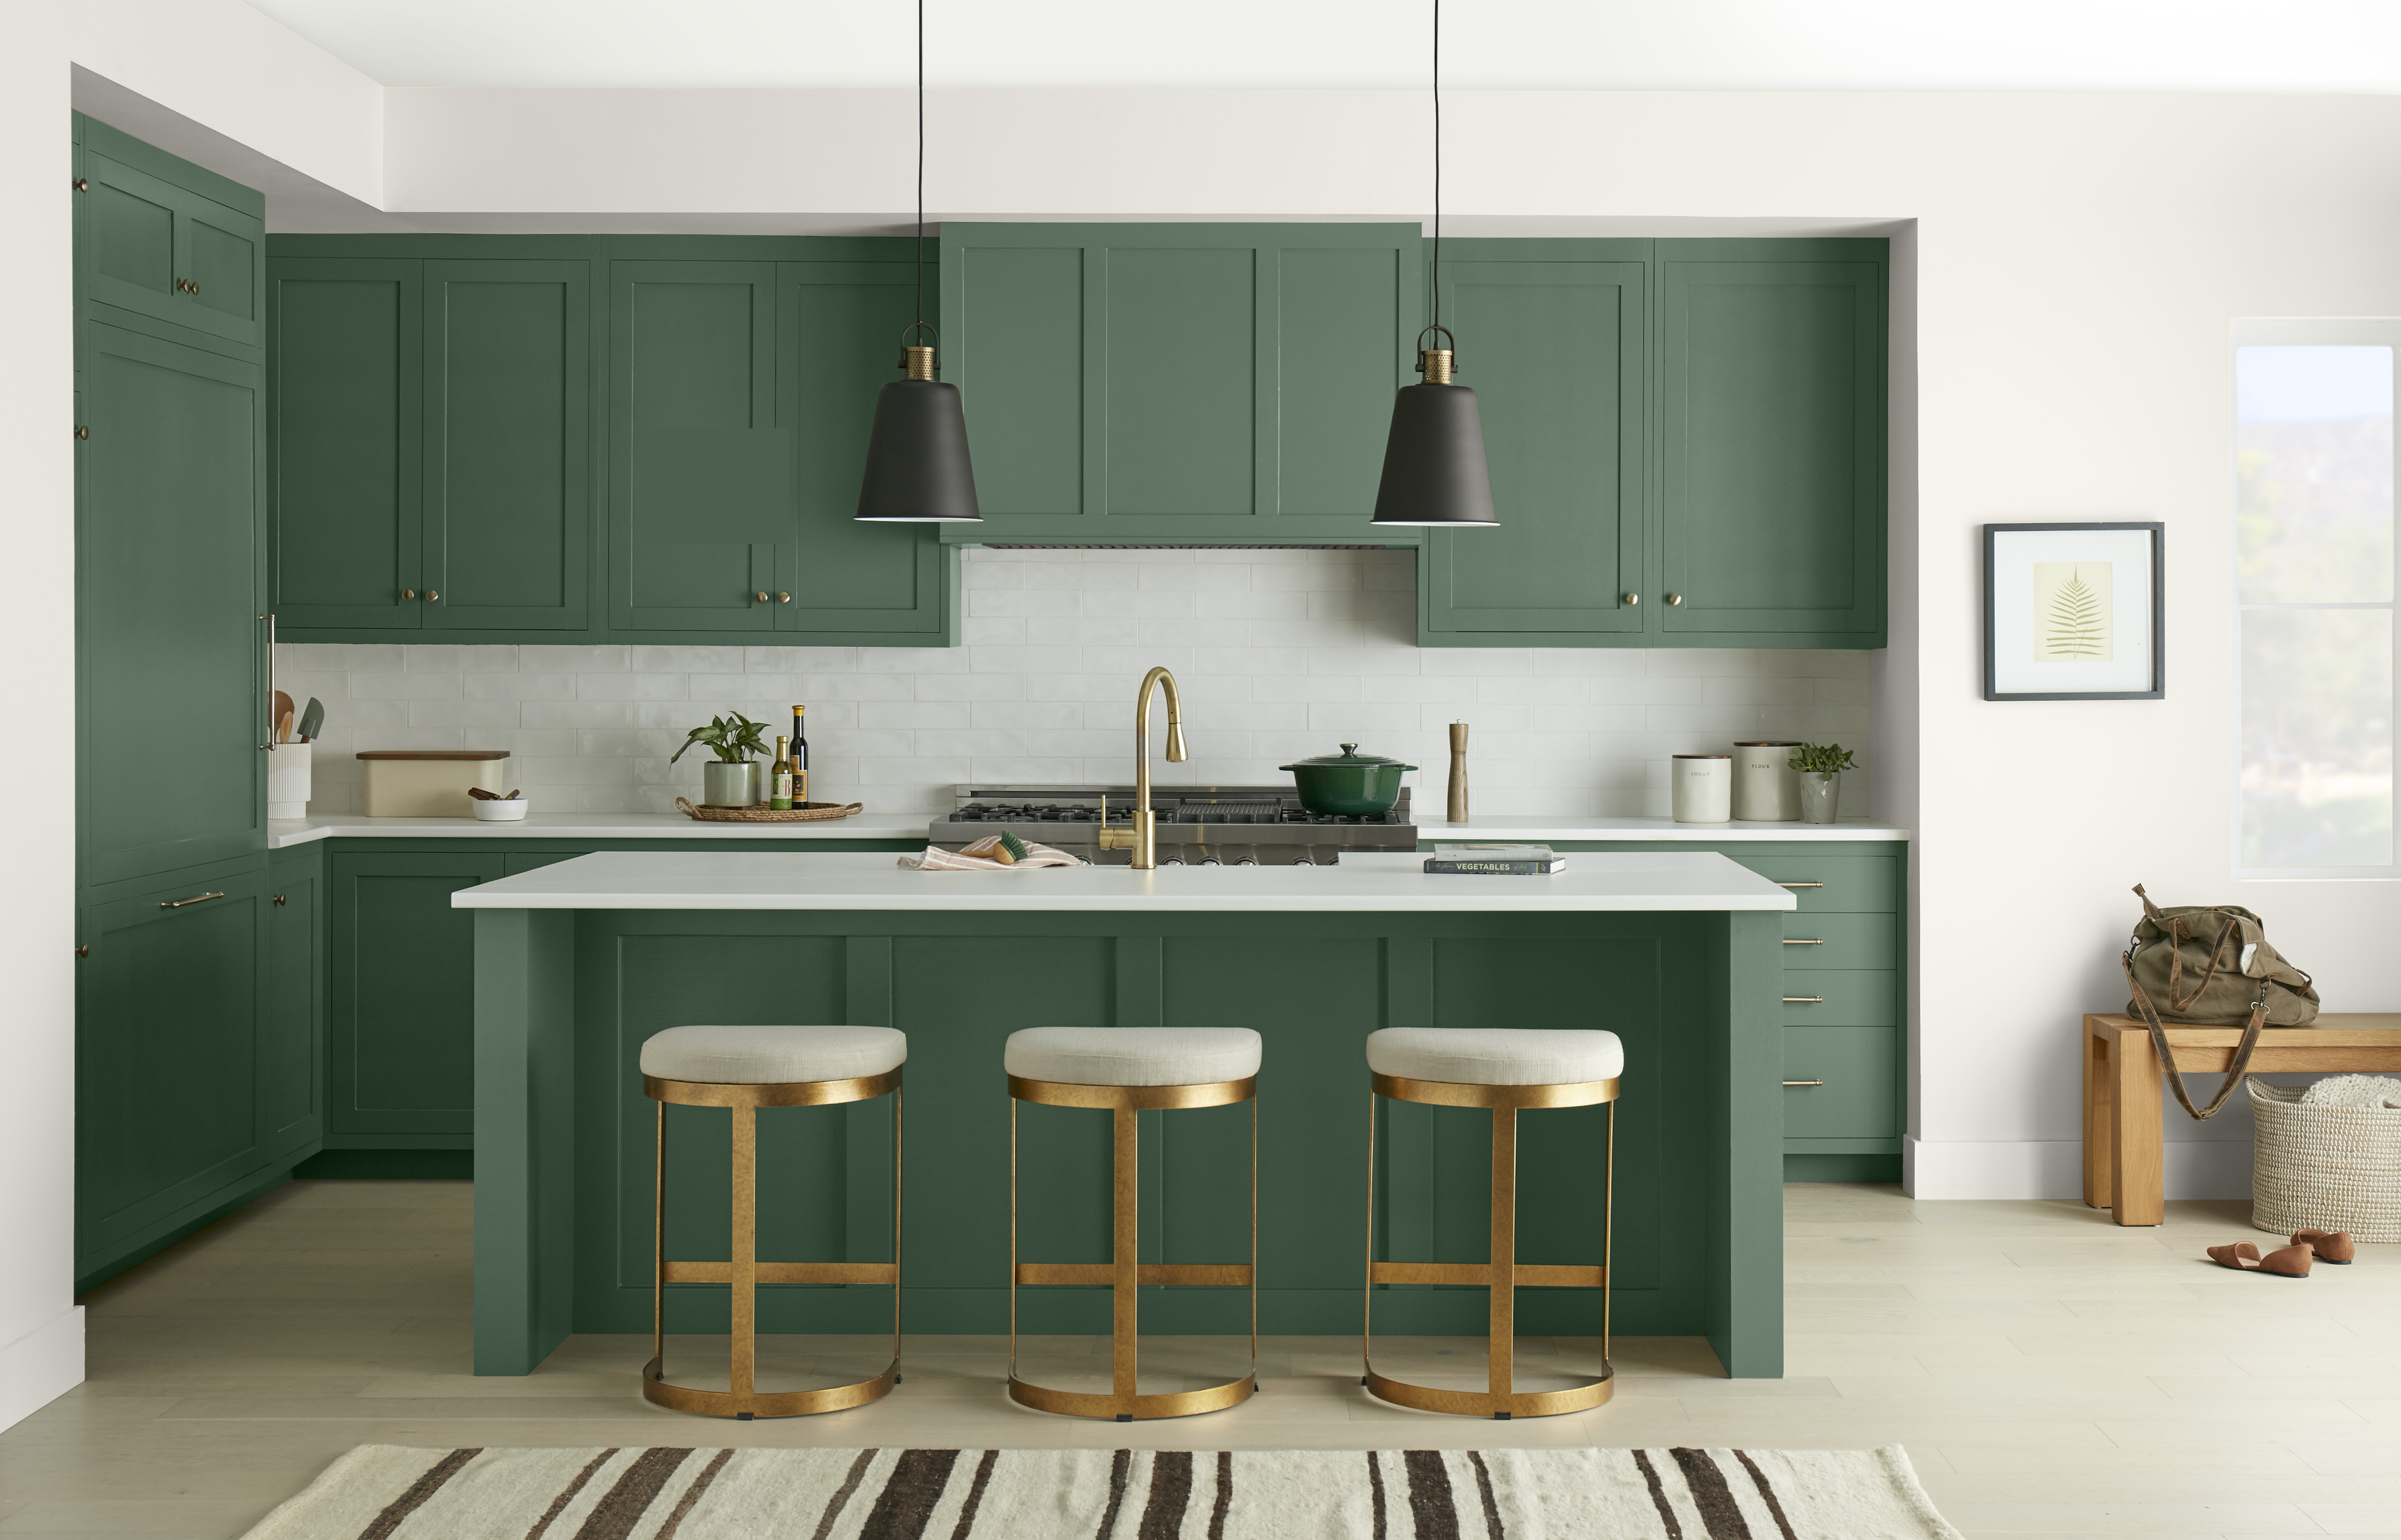 Une cuisine avec des armoires et un îlot peints dans une couleur de vert profond, stylisée avec des finitions modernes noires et dorées.